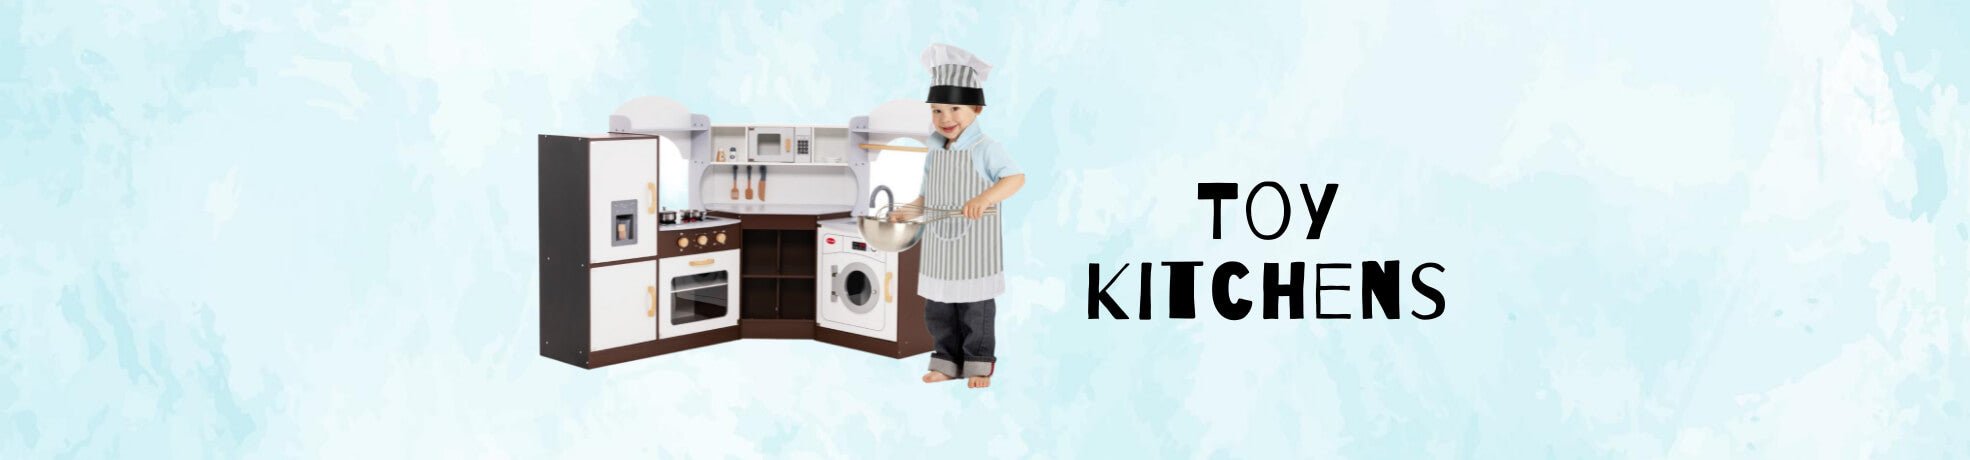 Toy Kitchens for Kids - Kids Mega Mart